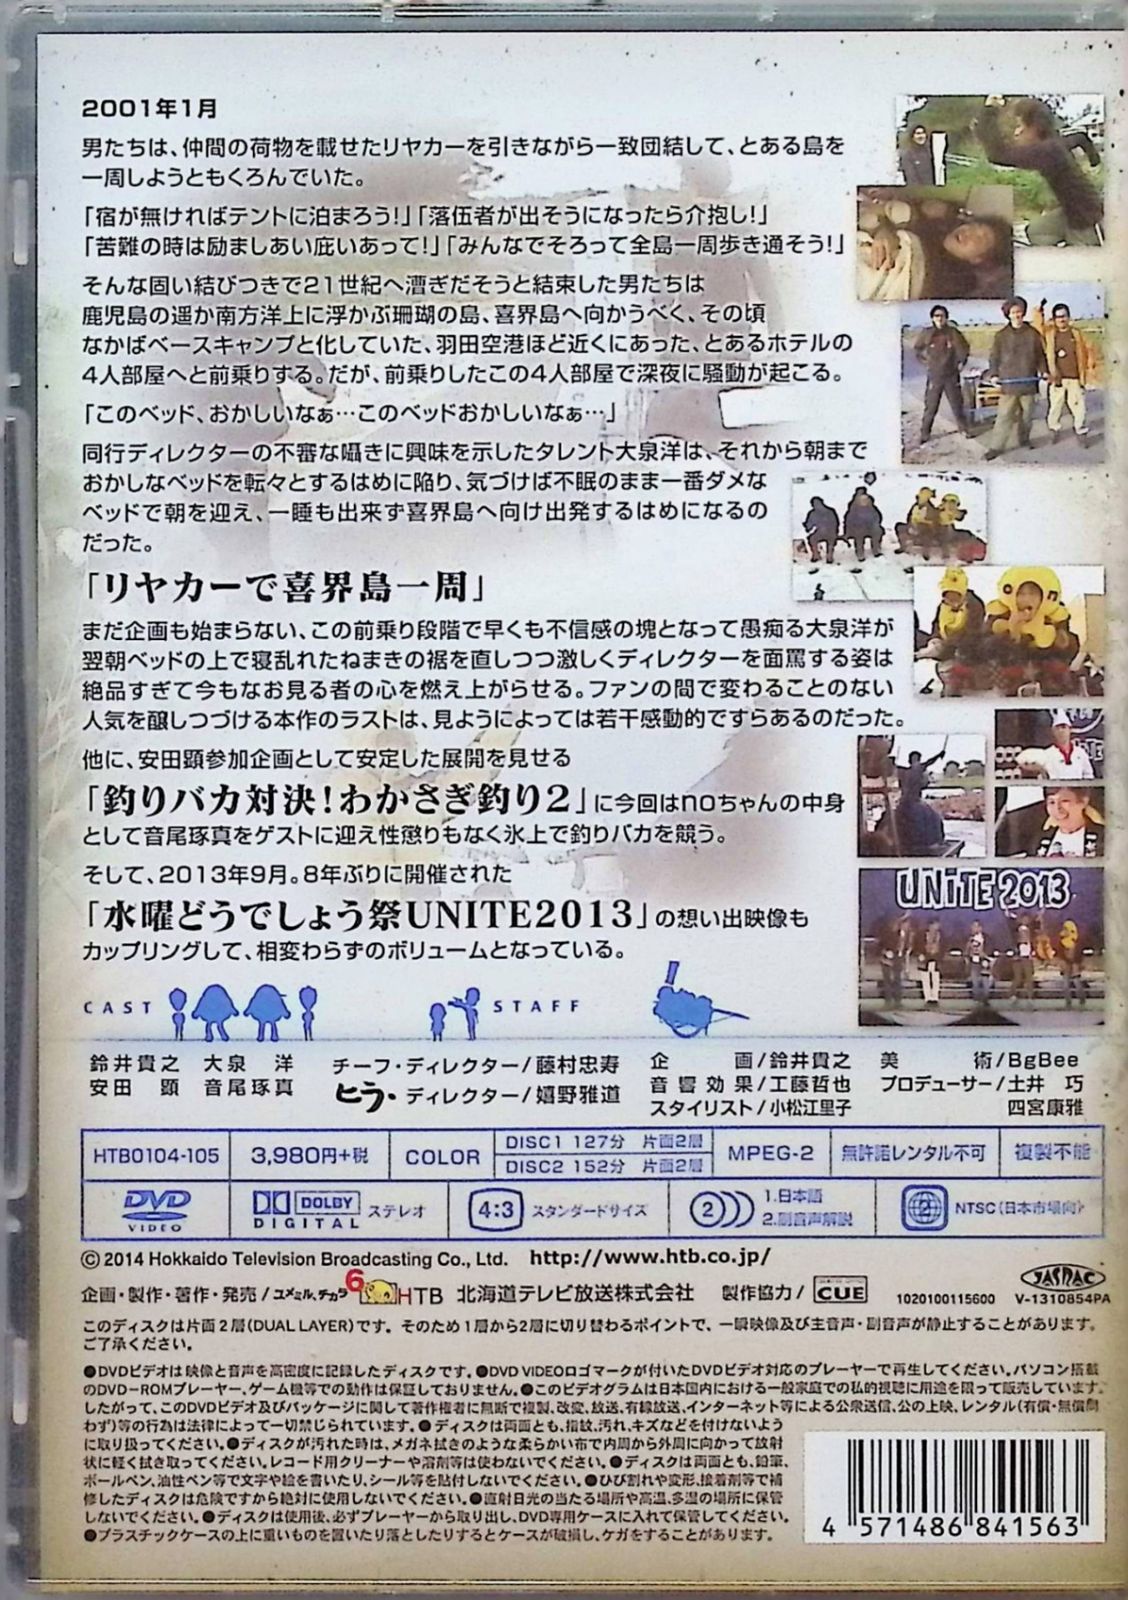 水曜どうでしょうDVD 第21弾 「リヤカーで喜界島一周/釣りバカ対決!わかさぎ釣り2/水曜どうでしょう祭UNITE2013」 (DVD2枚組) -  メルカリ